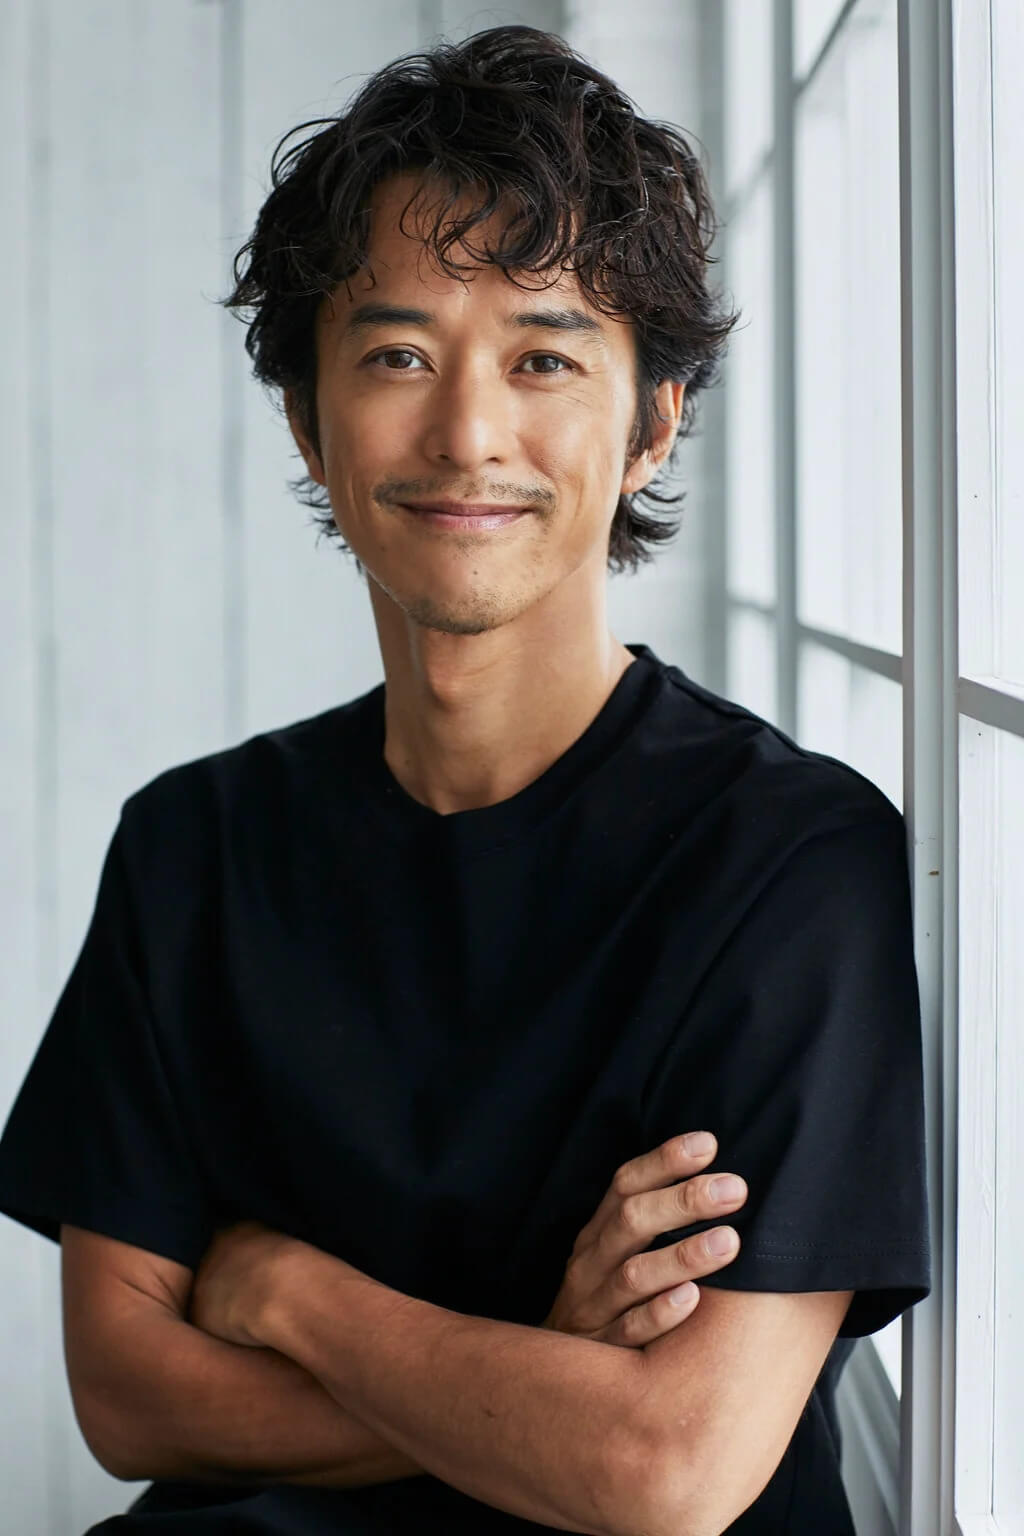 Kenji Kohashi